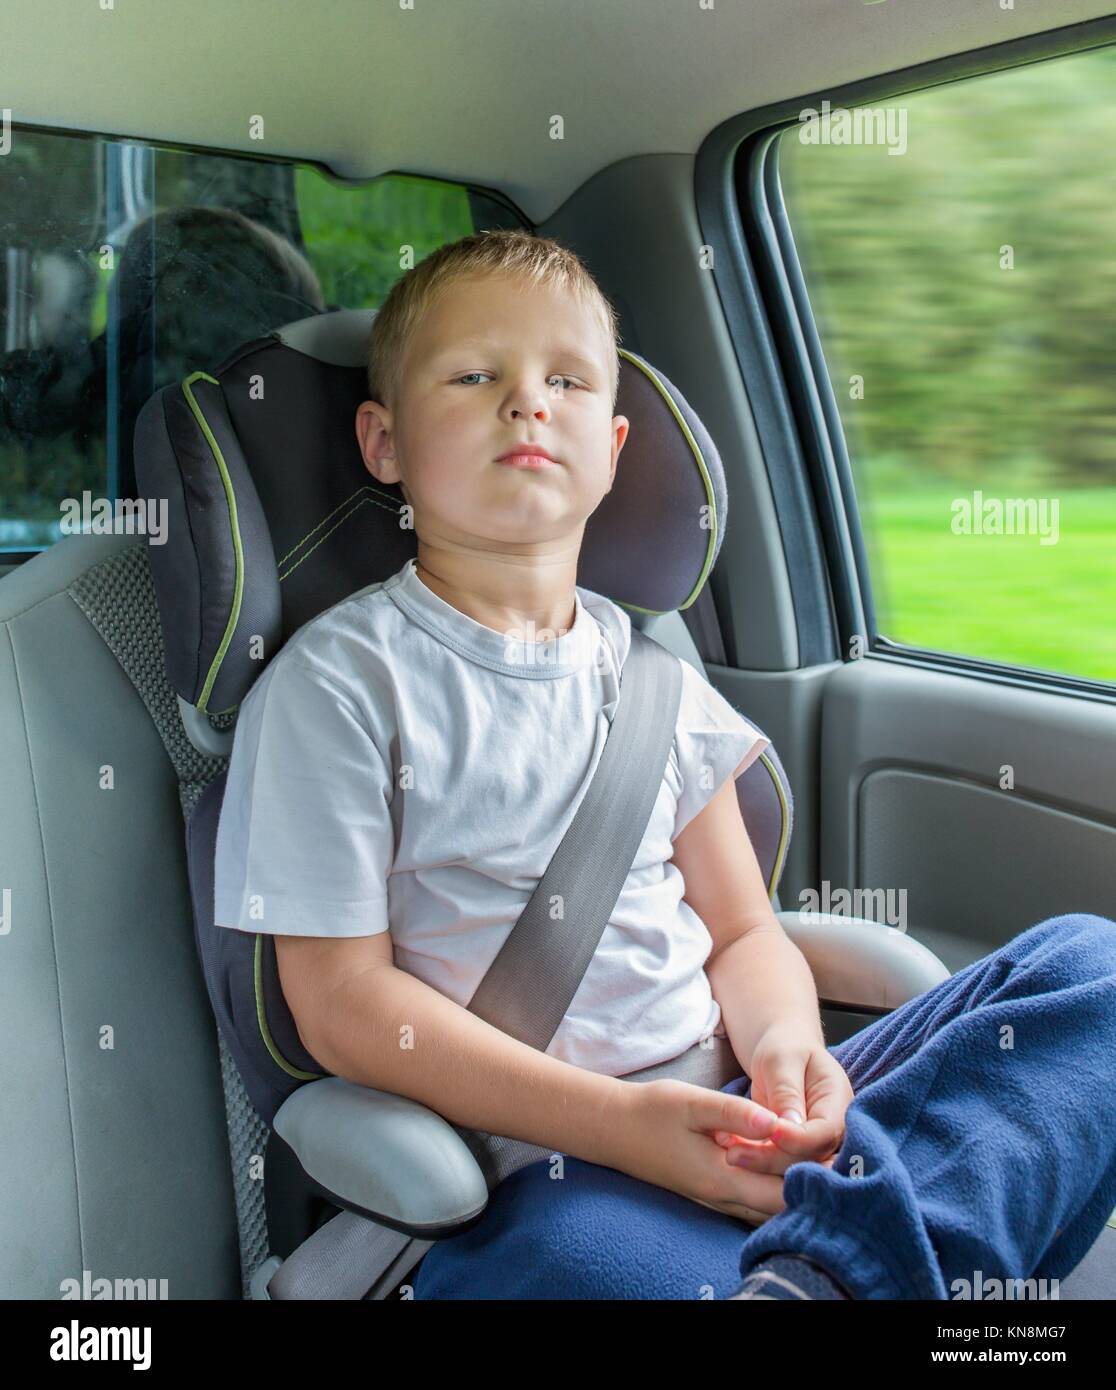 Junge Sitzt Im Kindersitz In Einem Auto Stockfotos und bilder